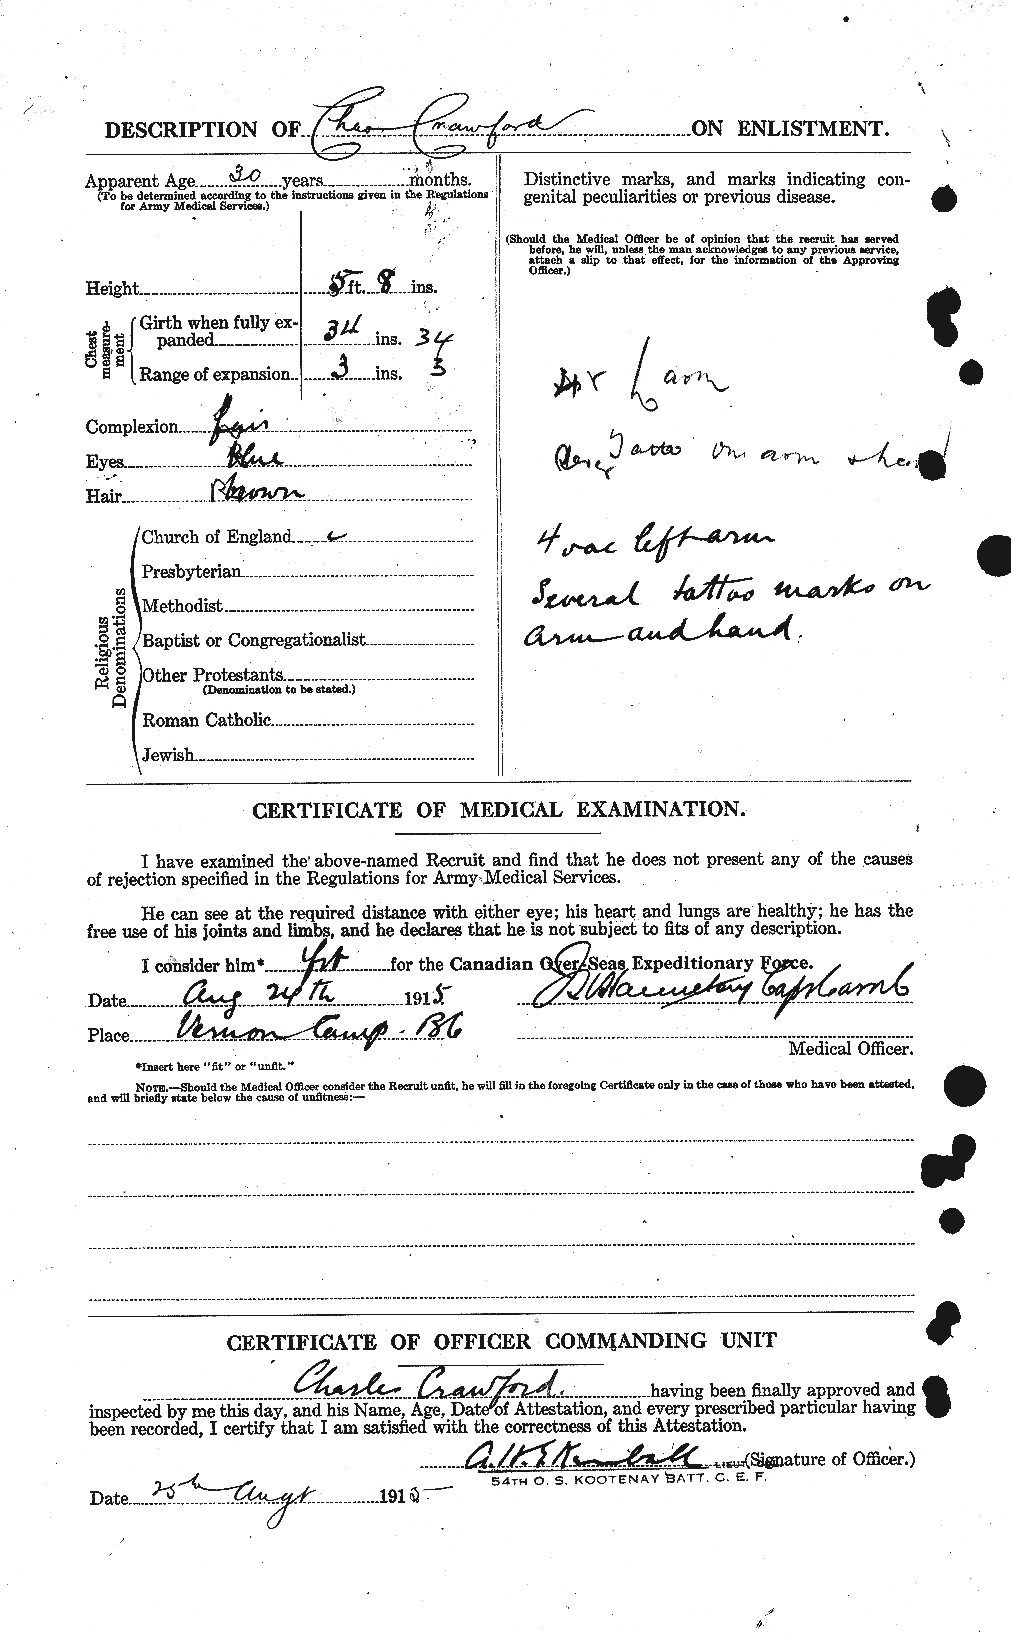 Dossiers du Personnel de la Première Guerre mondiale - CEC 060854b